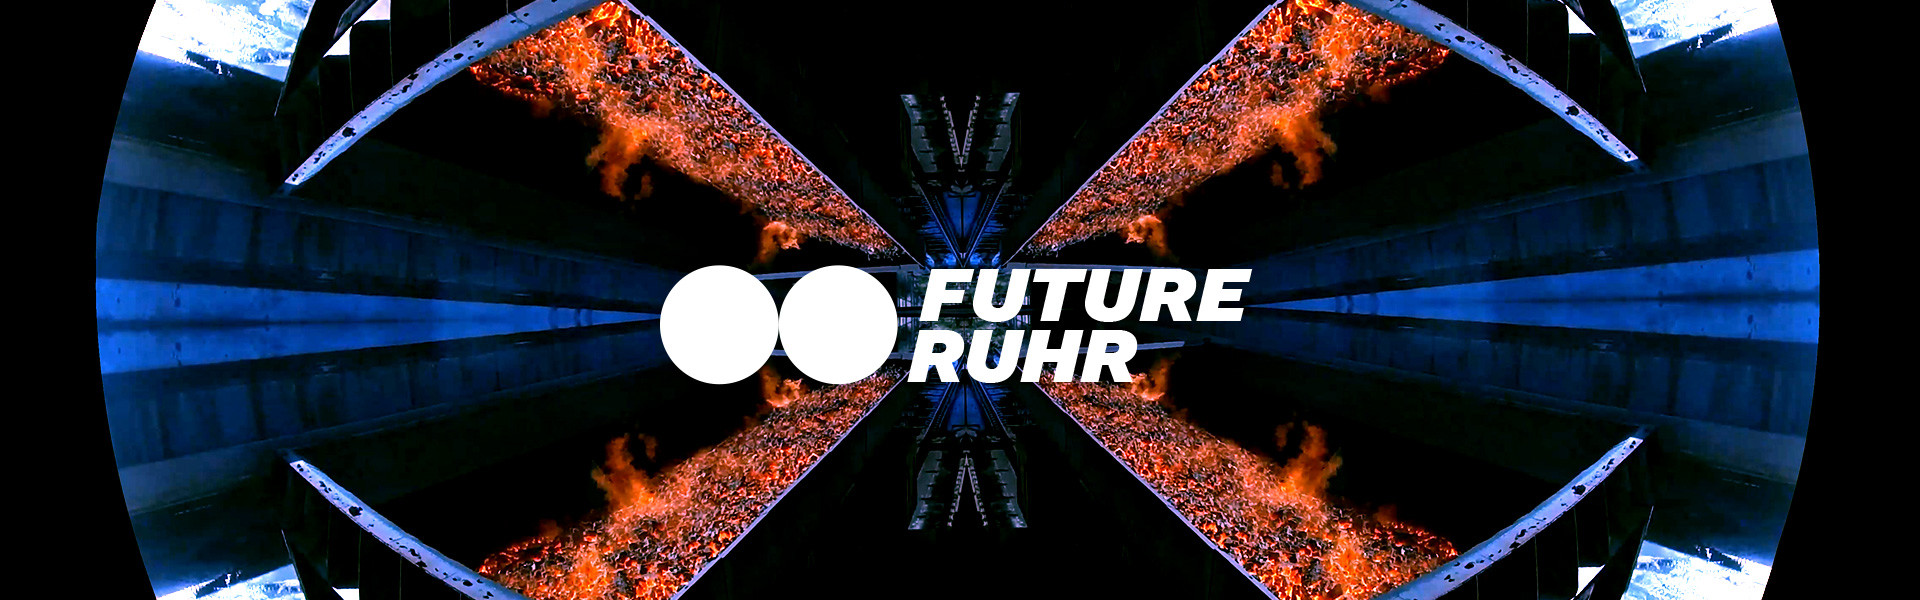 FUTURE RUHR